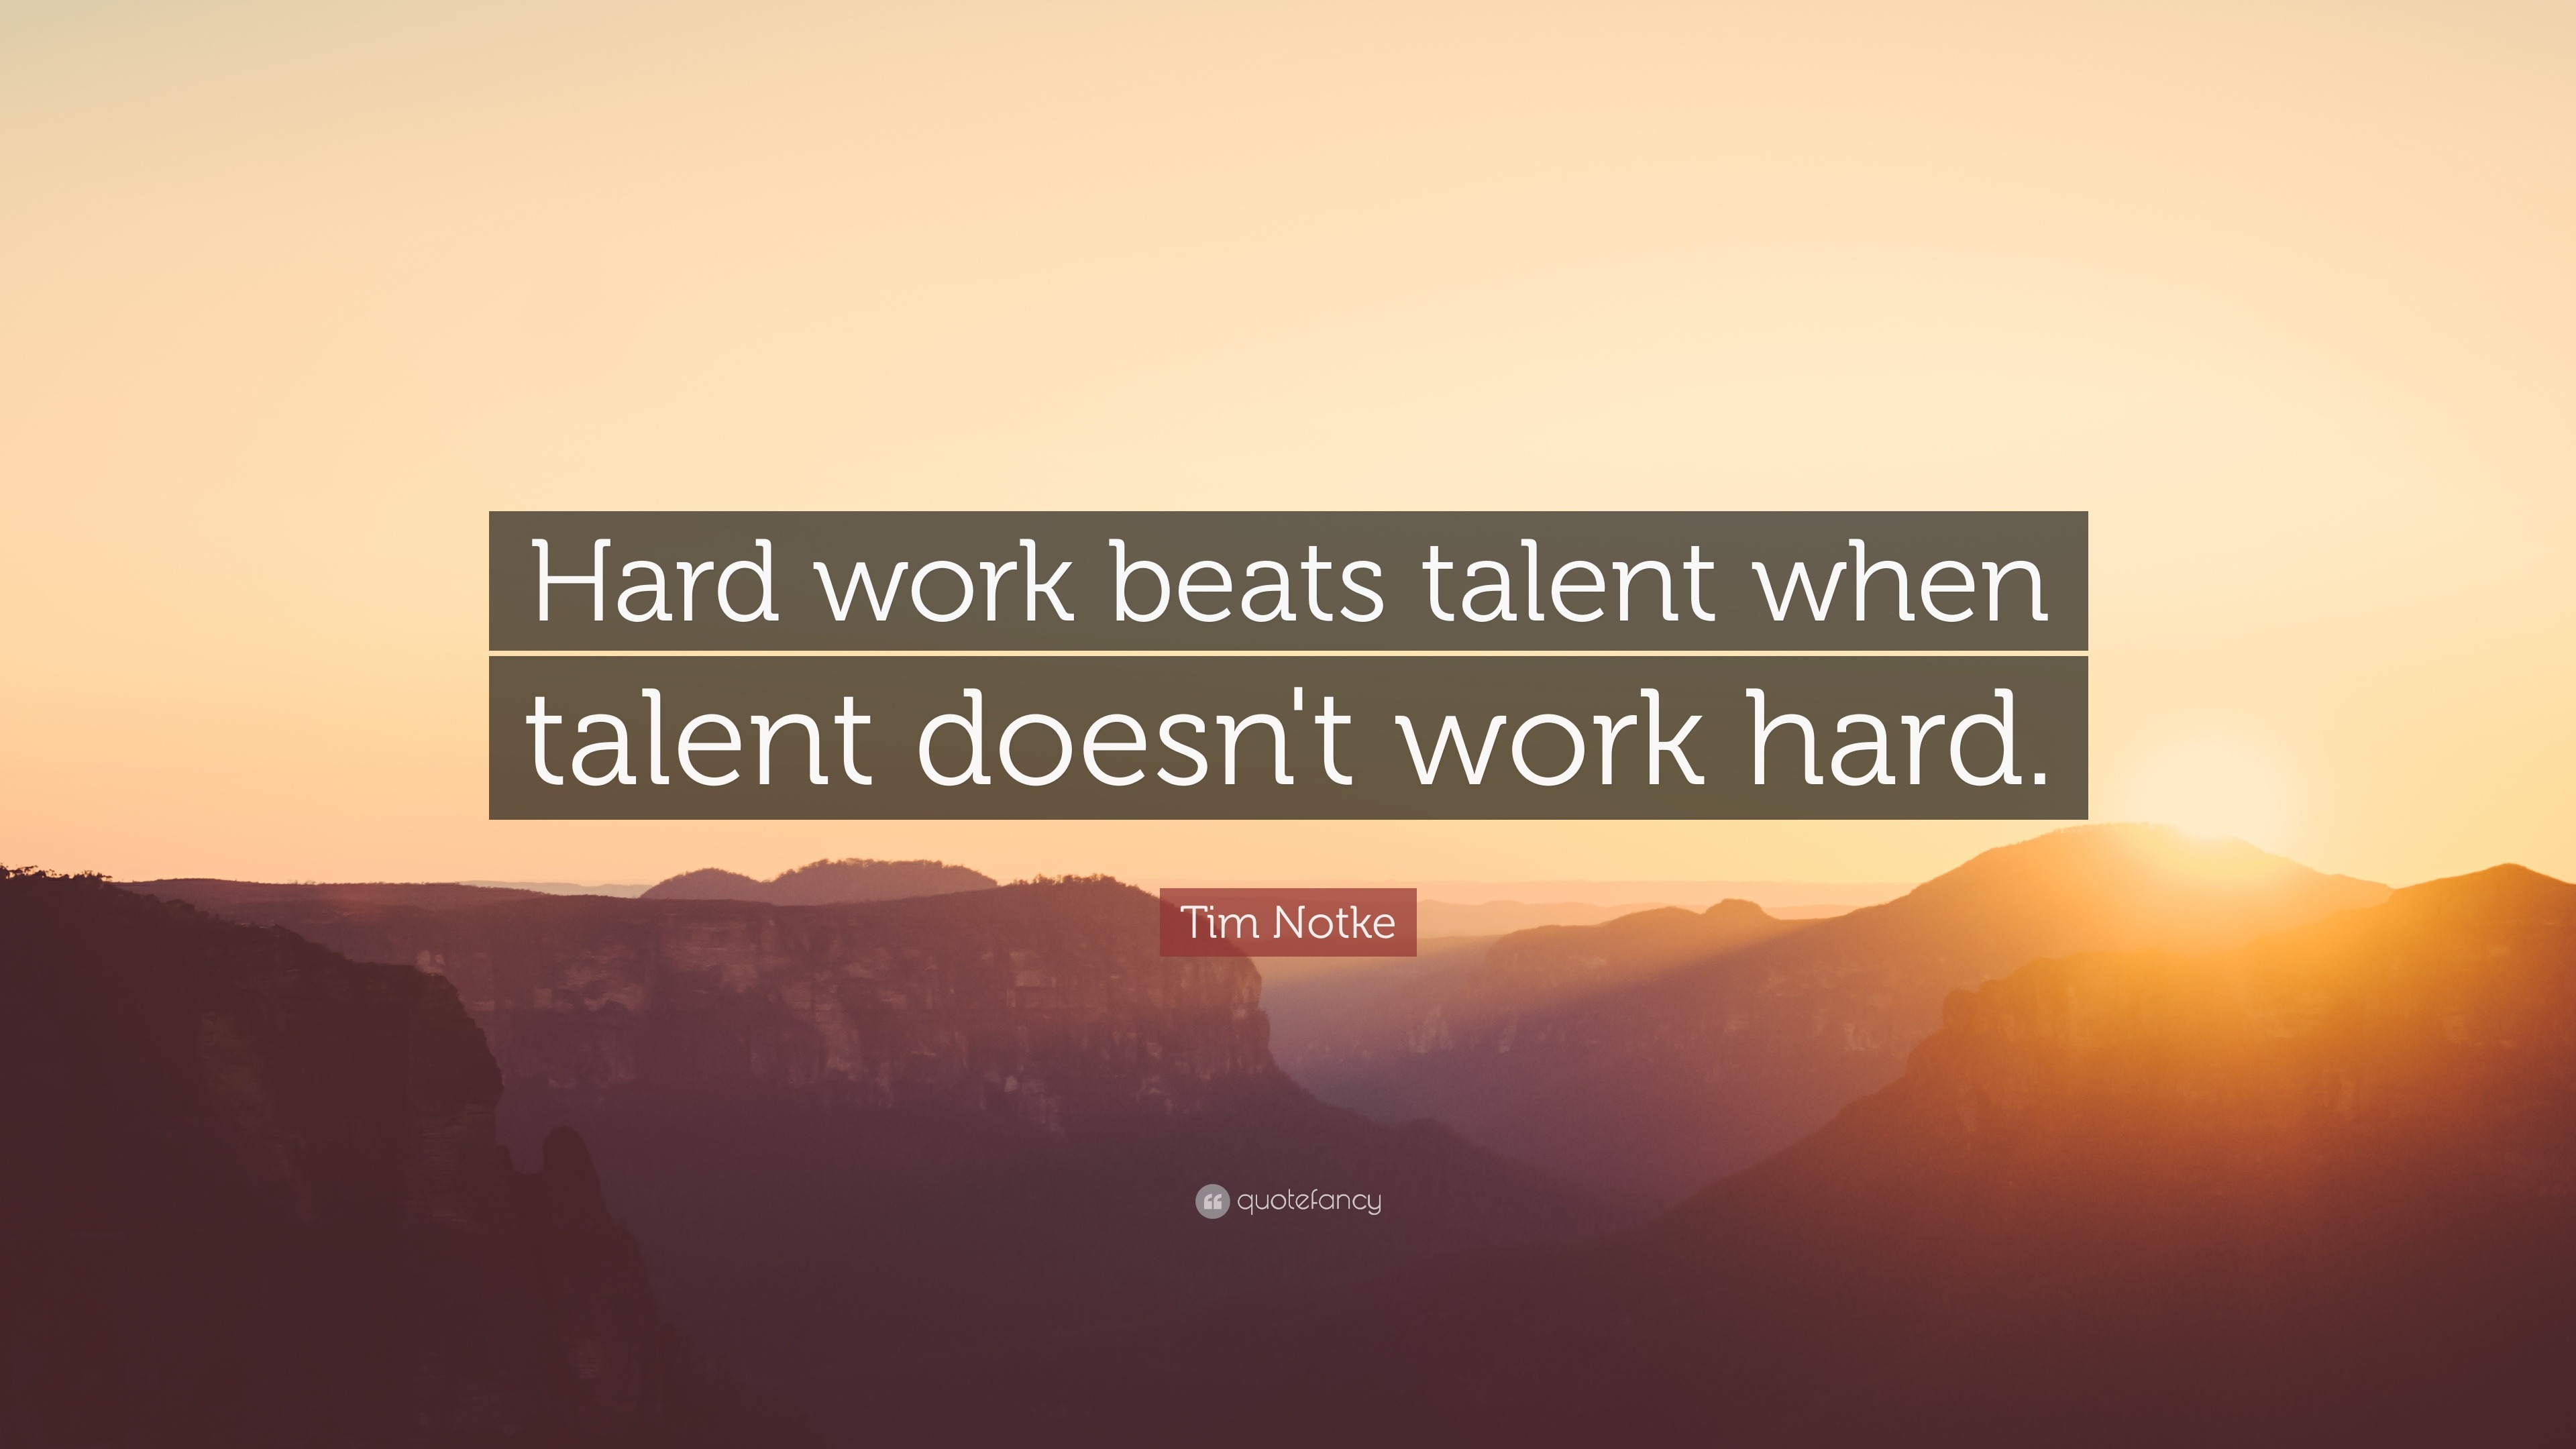 Tim Notke “Hard work talent when talent doesn't work hard.”